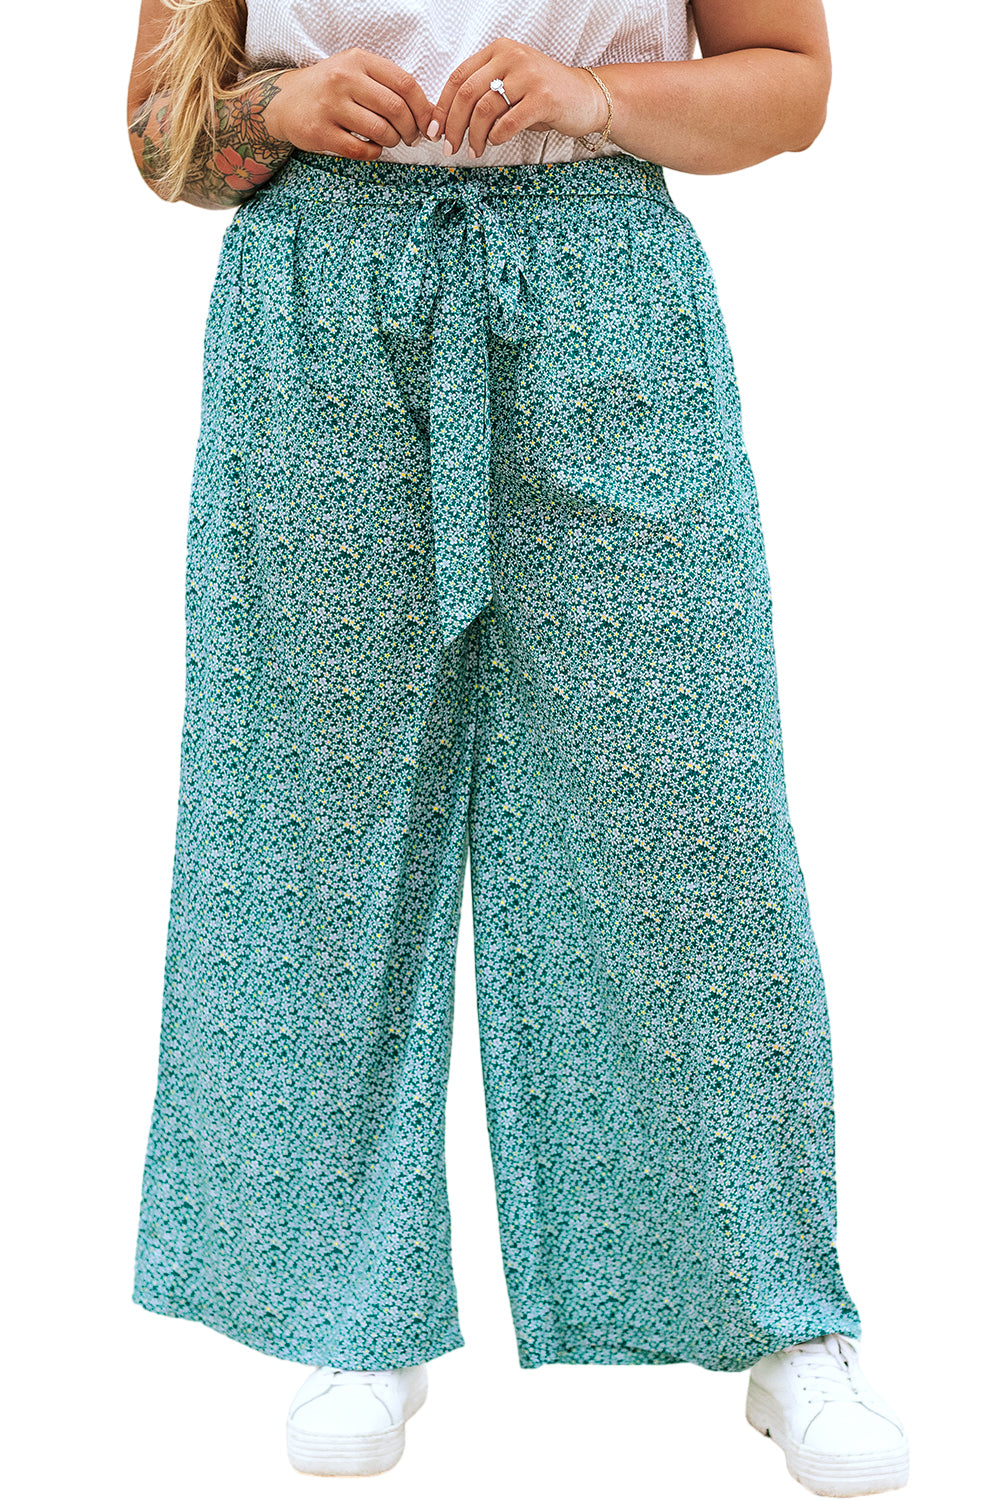 Zelene hlače širokih nogavica veće veličine s cvjetnim vezanjem u struku